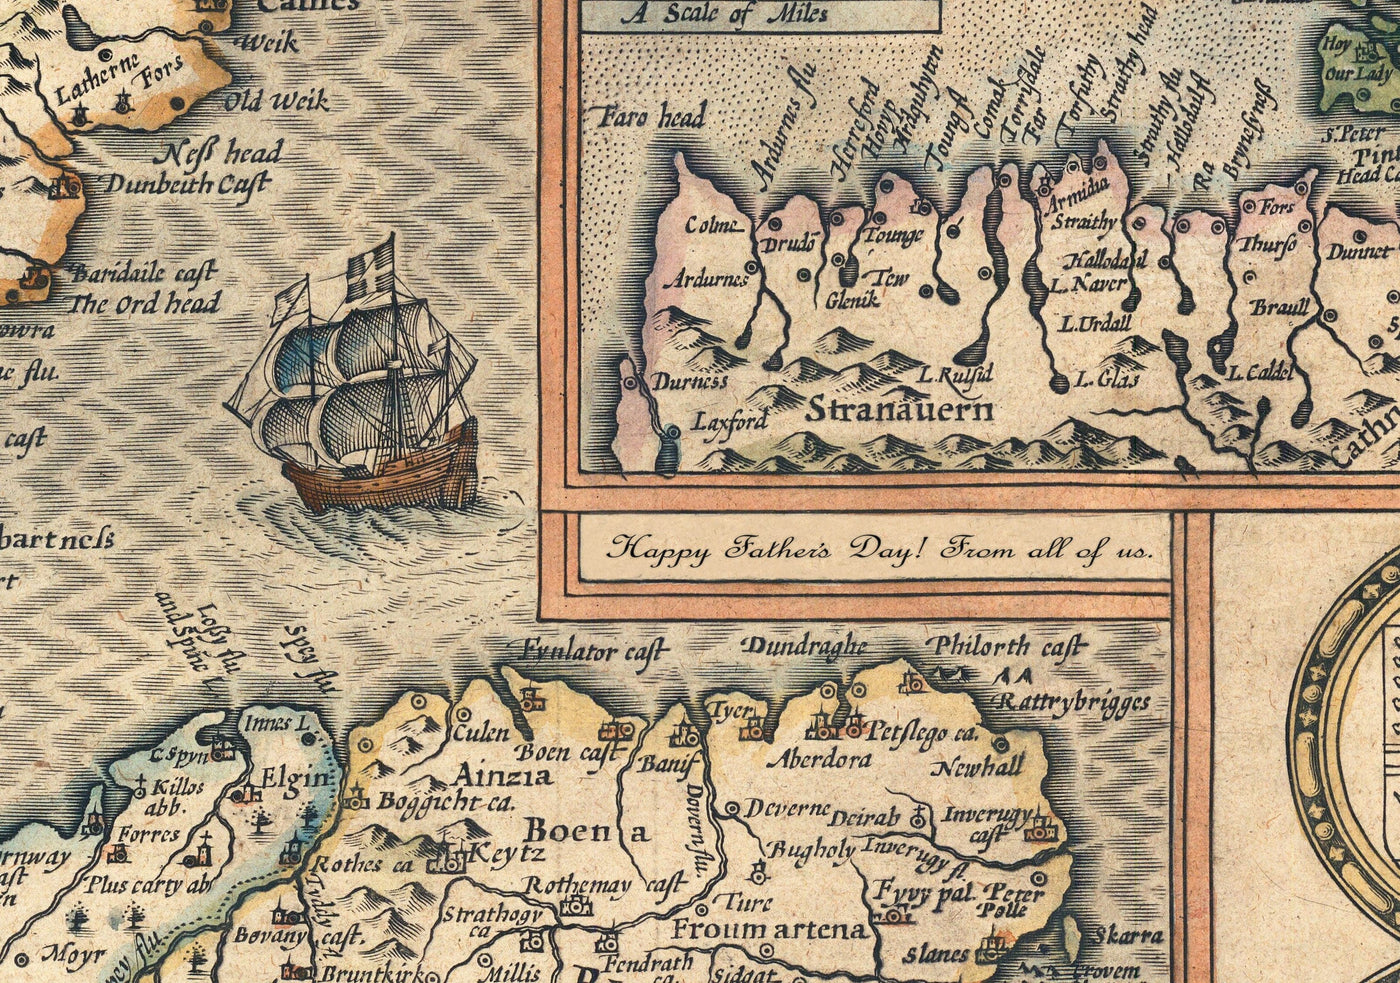 Alte handgefärterte Karte von Italien, 1627 von John Speed ​​- Korsika, Sardinien, Sizilien, Venedig, Rom, der Papst